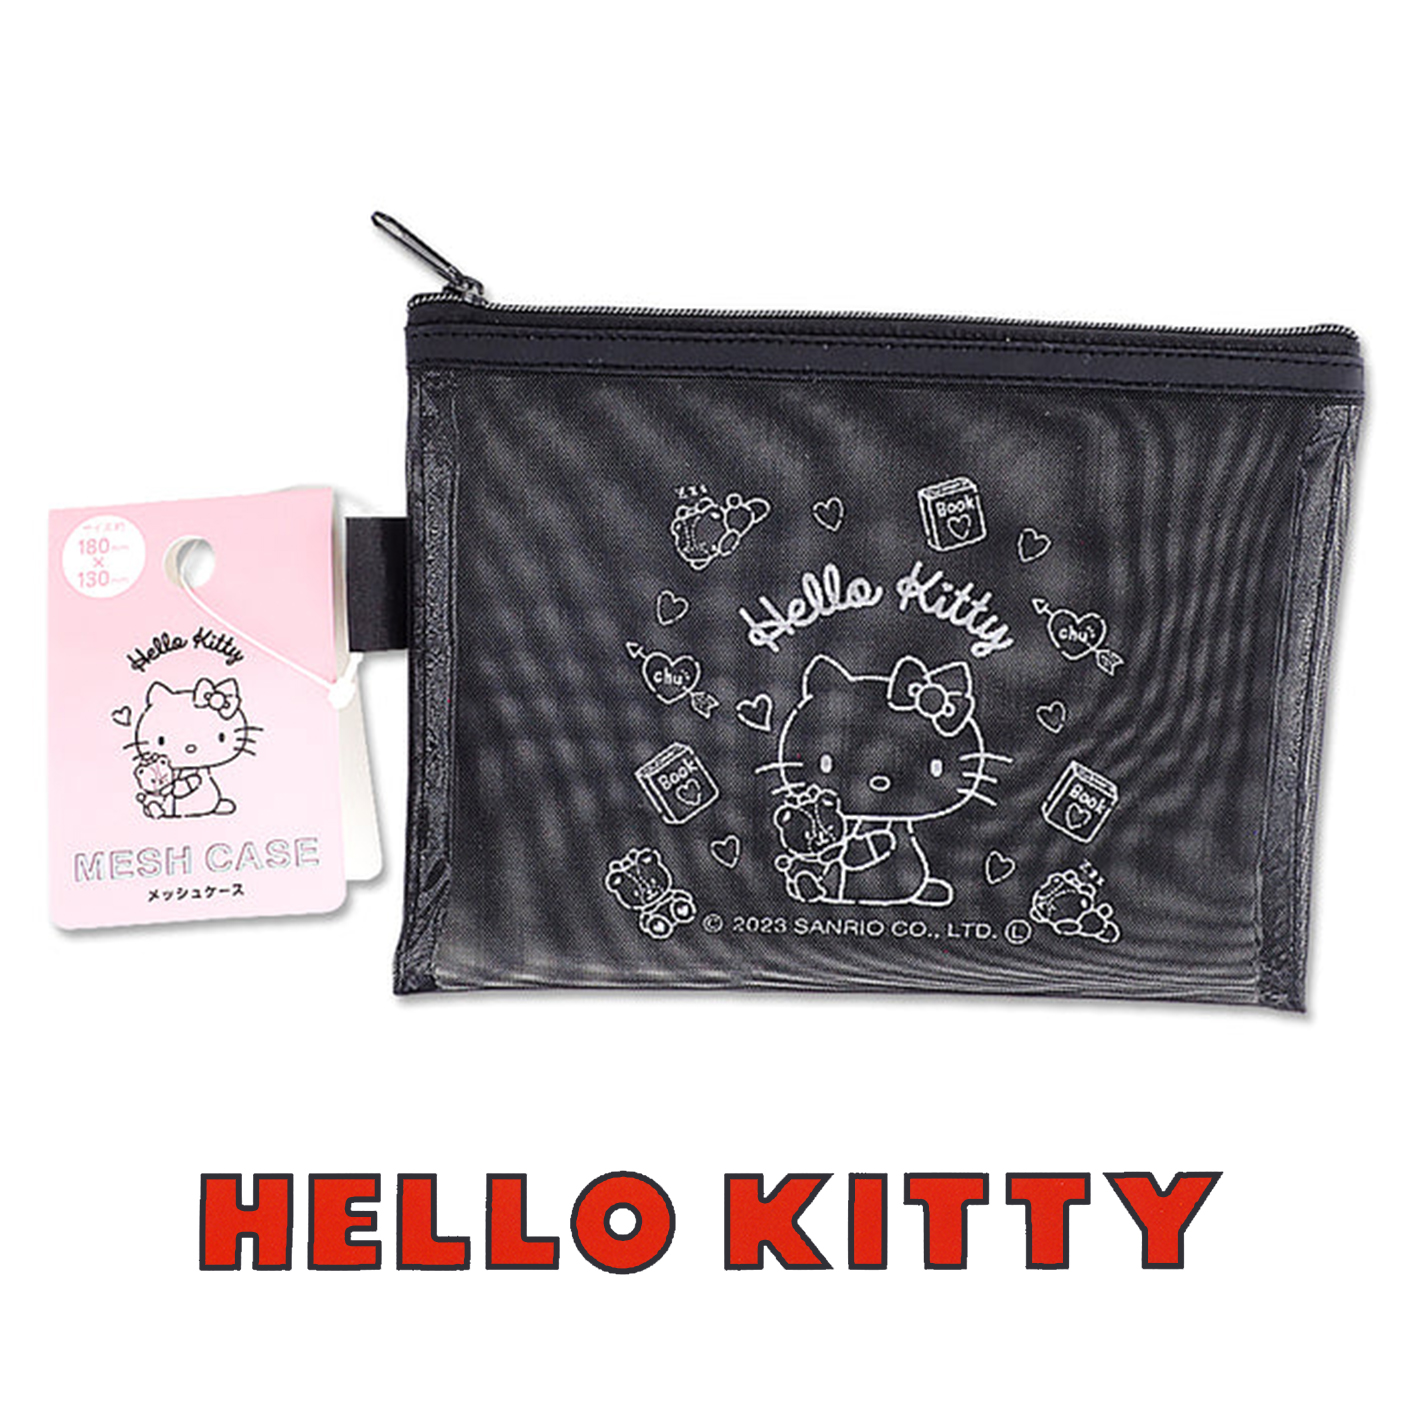 小物收納袋-HELLO KITTY 三麗鷗 Sanrio 日本進口正版授權